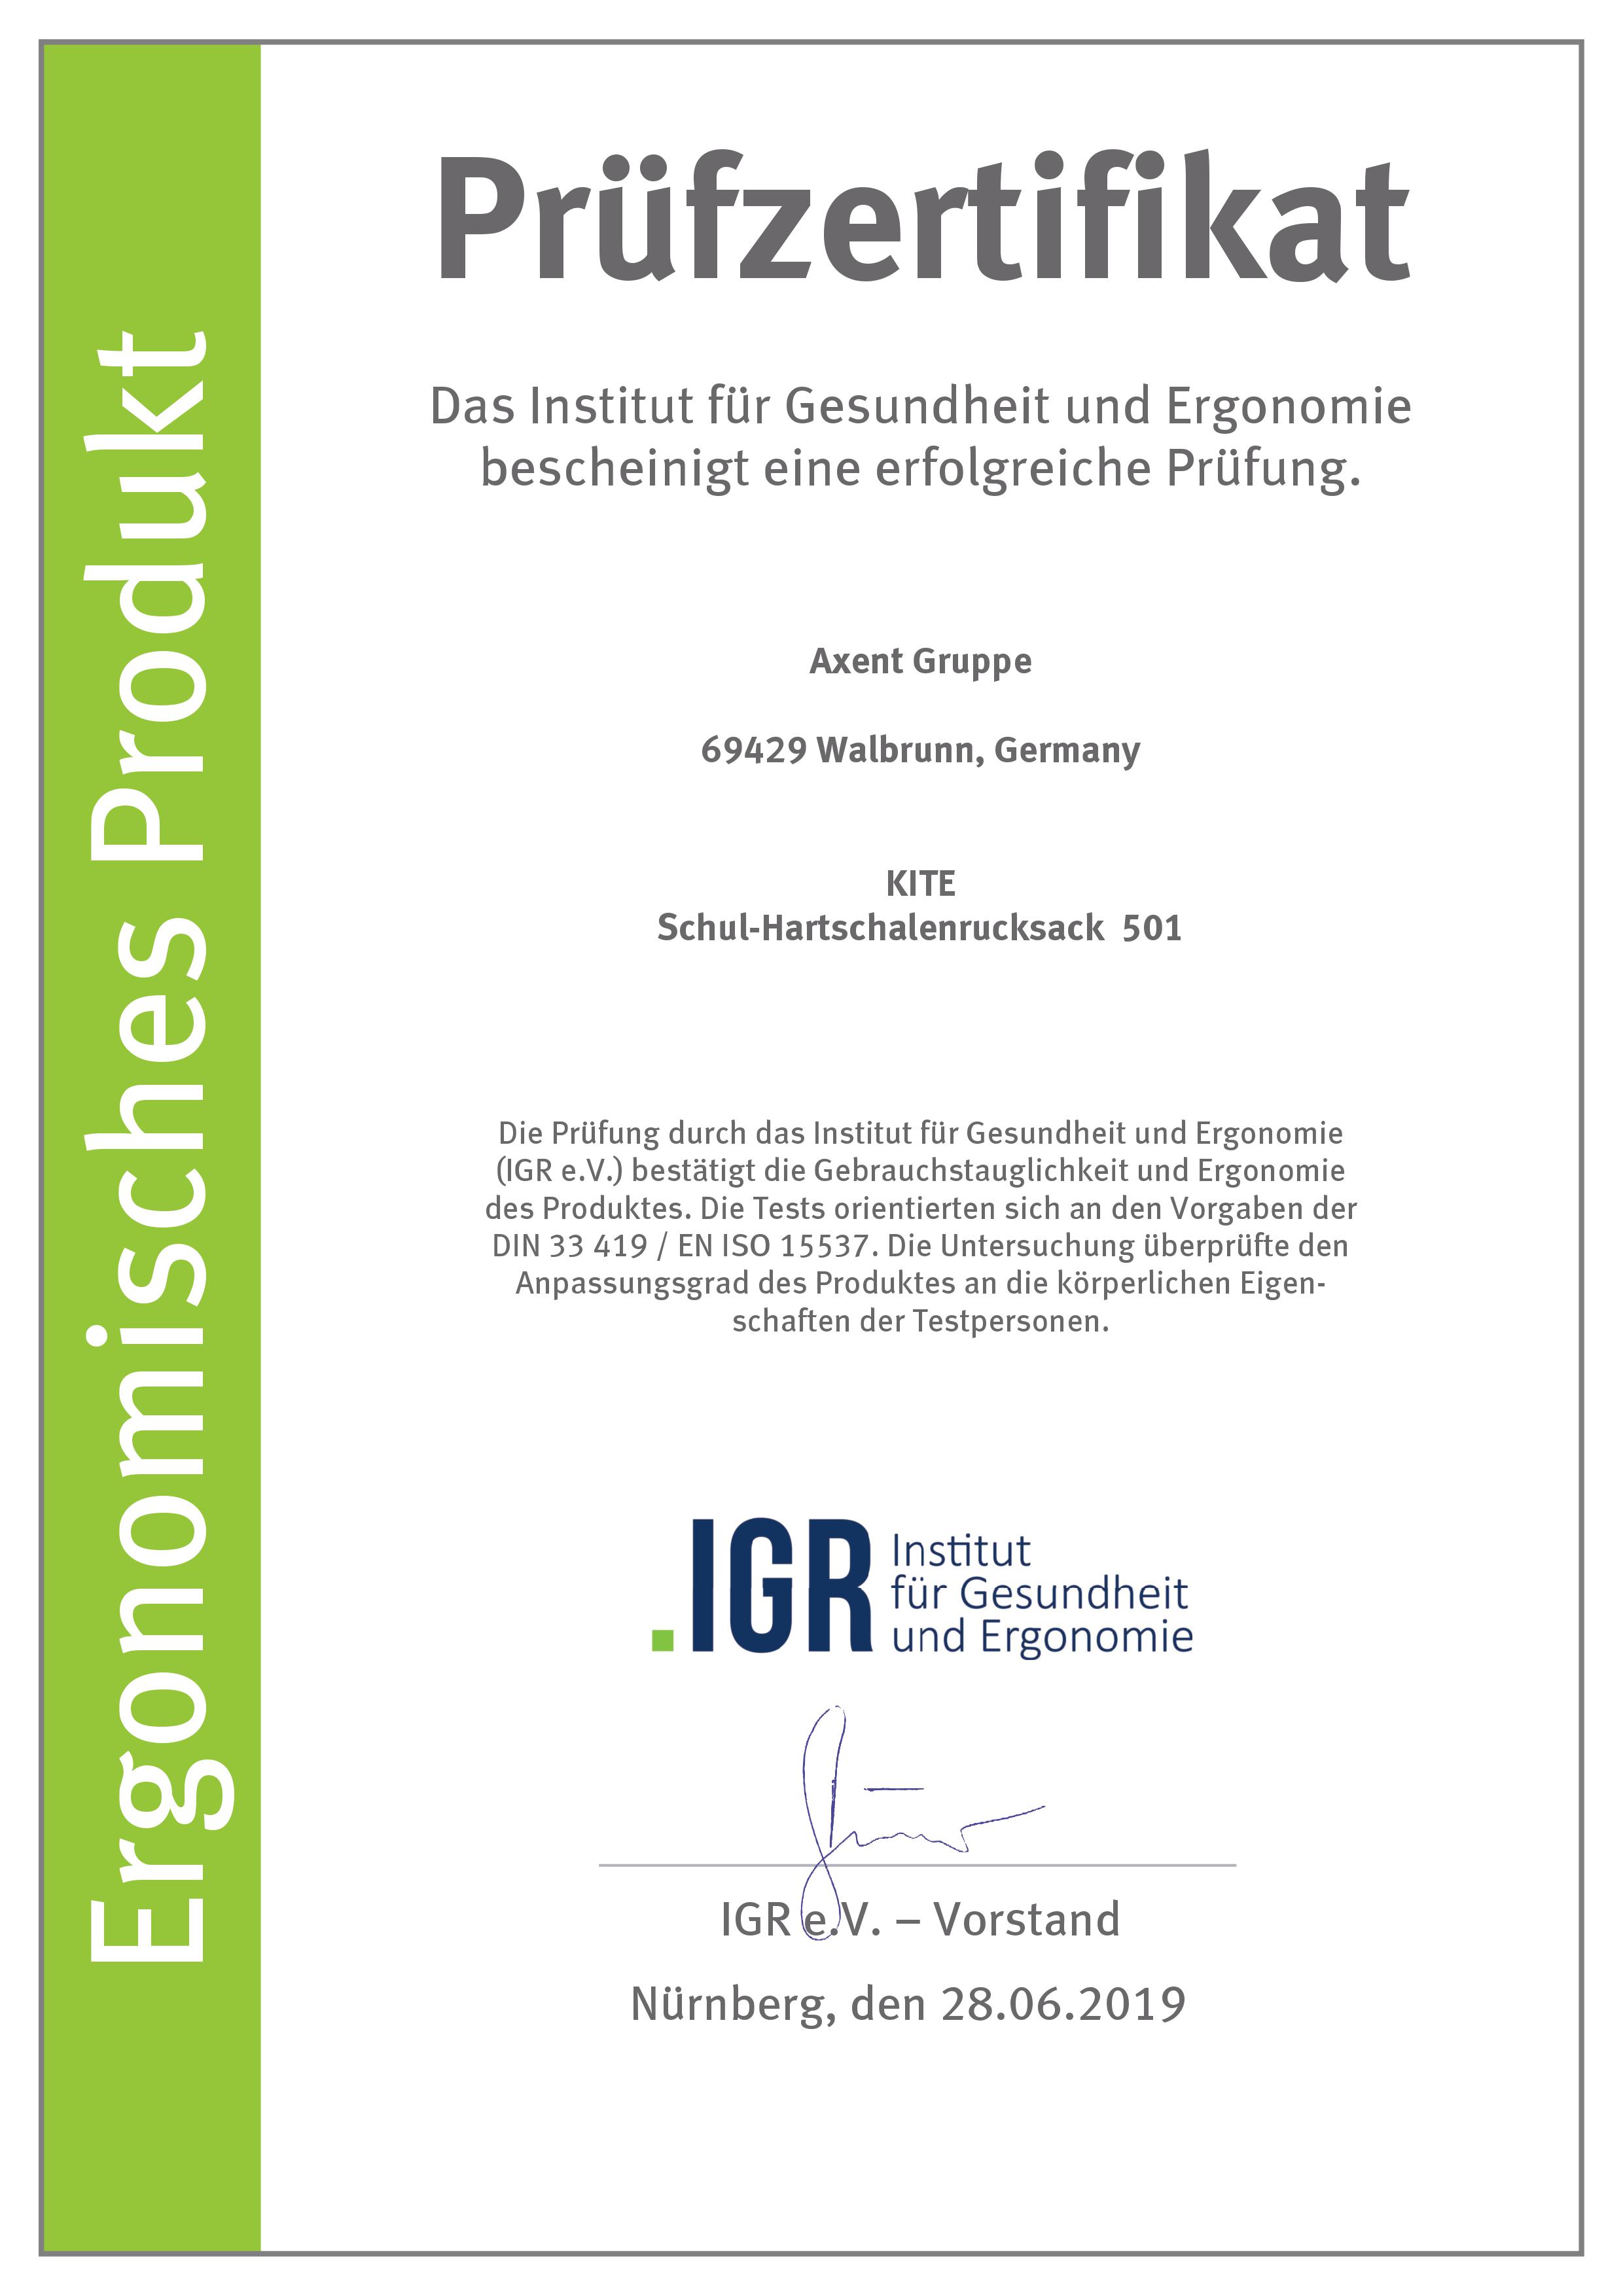 Сертифікат Німецького інституту здоров'я і ергономіки IGR - модель 501